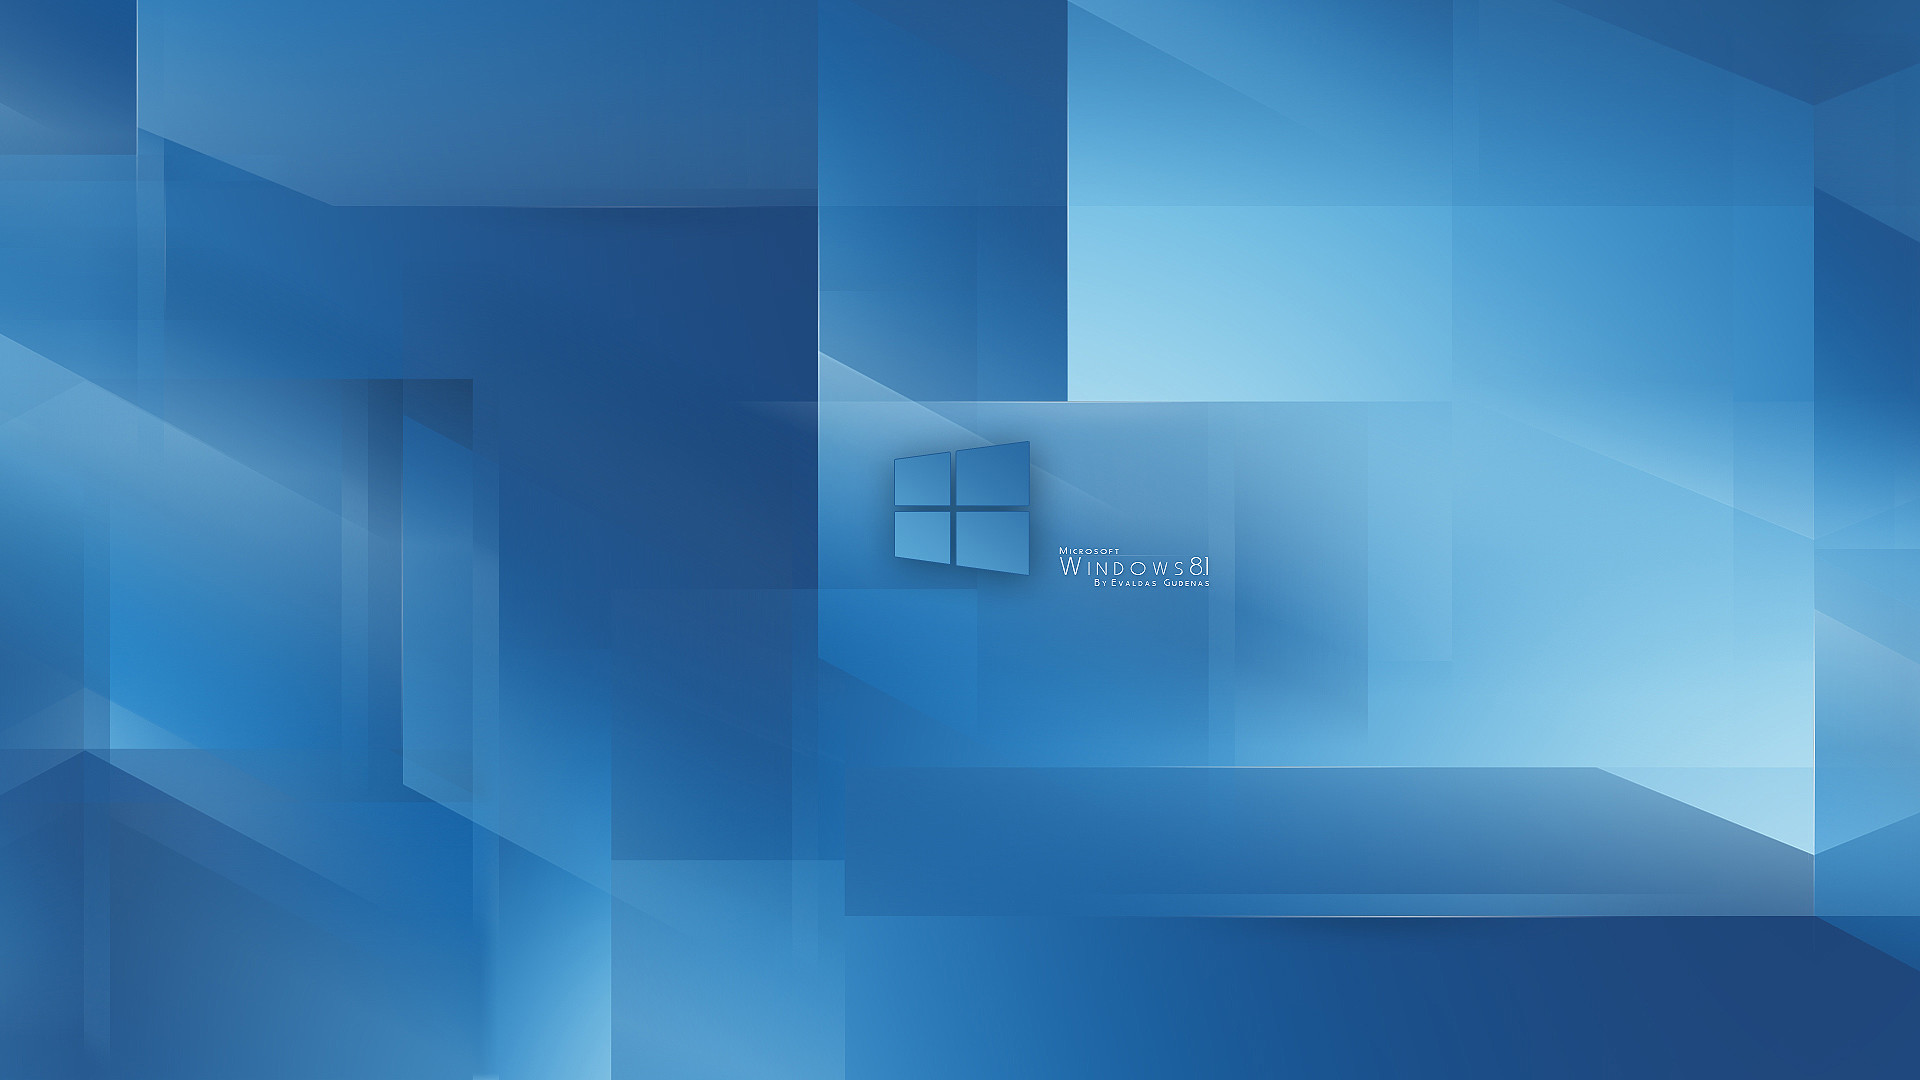 1920x1080 Windows 8.1 Wallpaper HD 1366x768 - WallpaperSafari